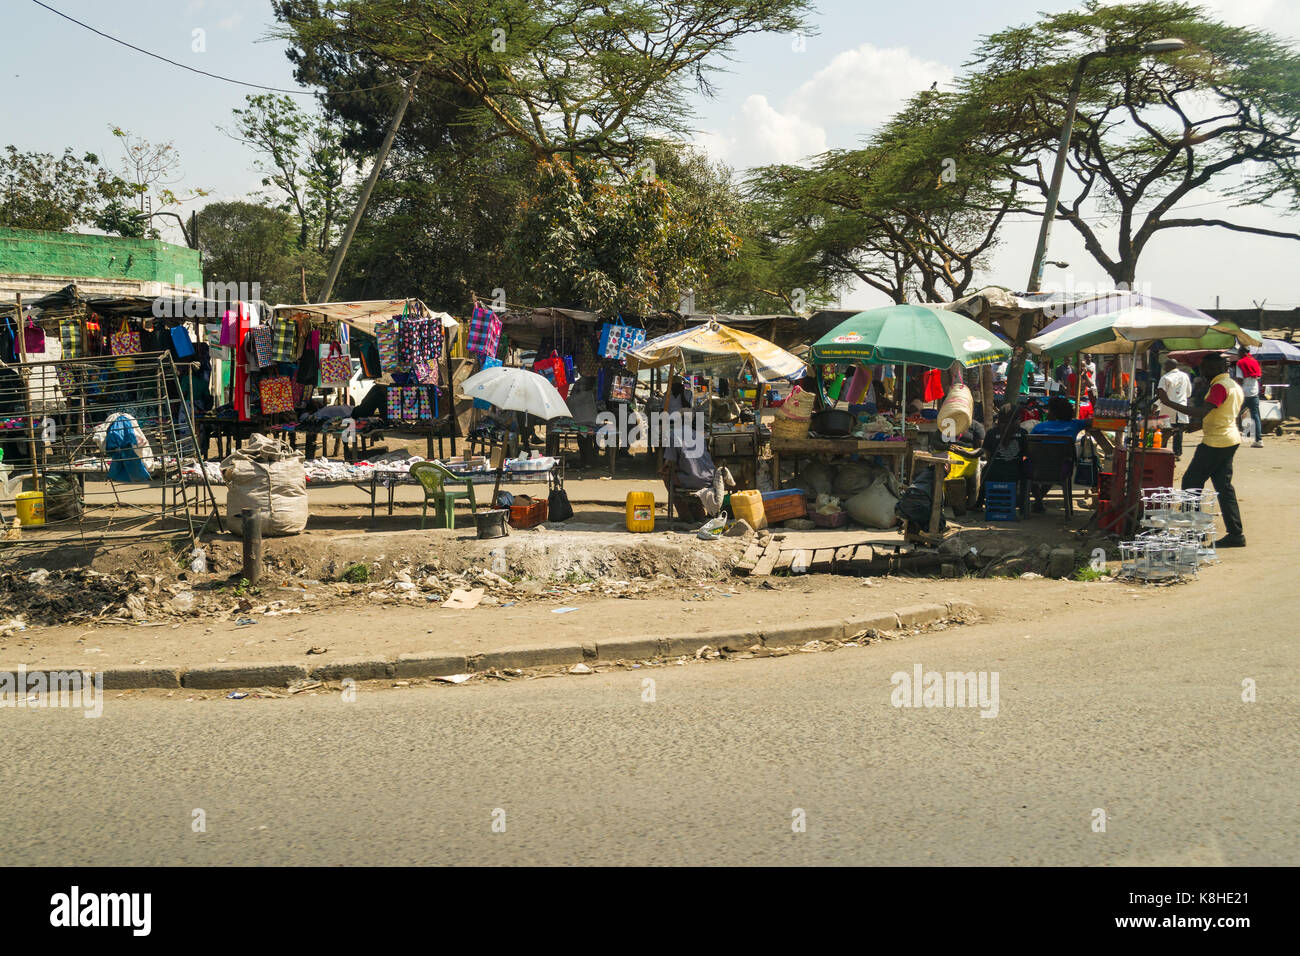 Various roadside stalls selling goods with people looking, Nairobi, Kenya Stock Photo